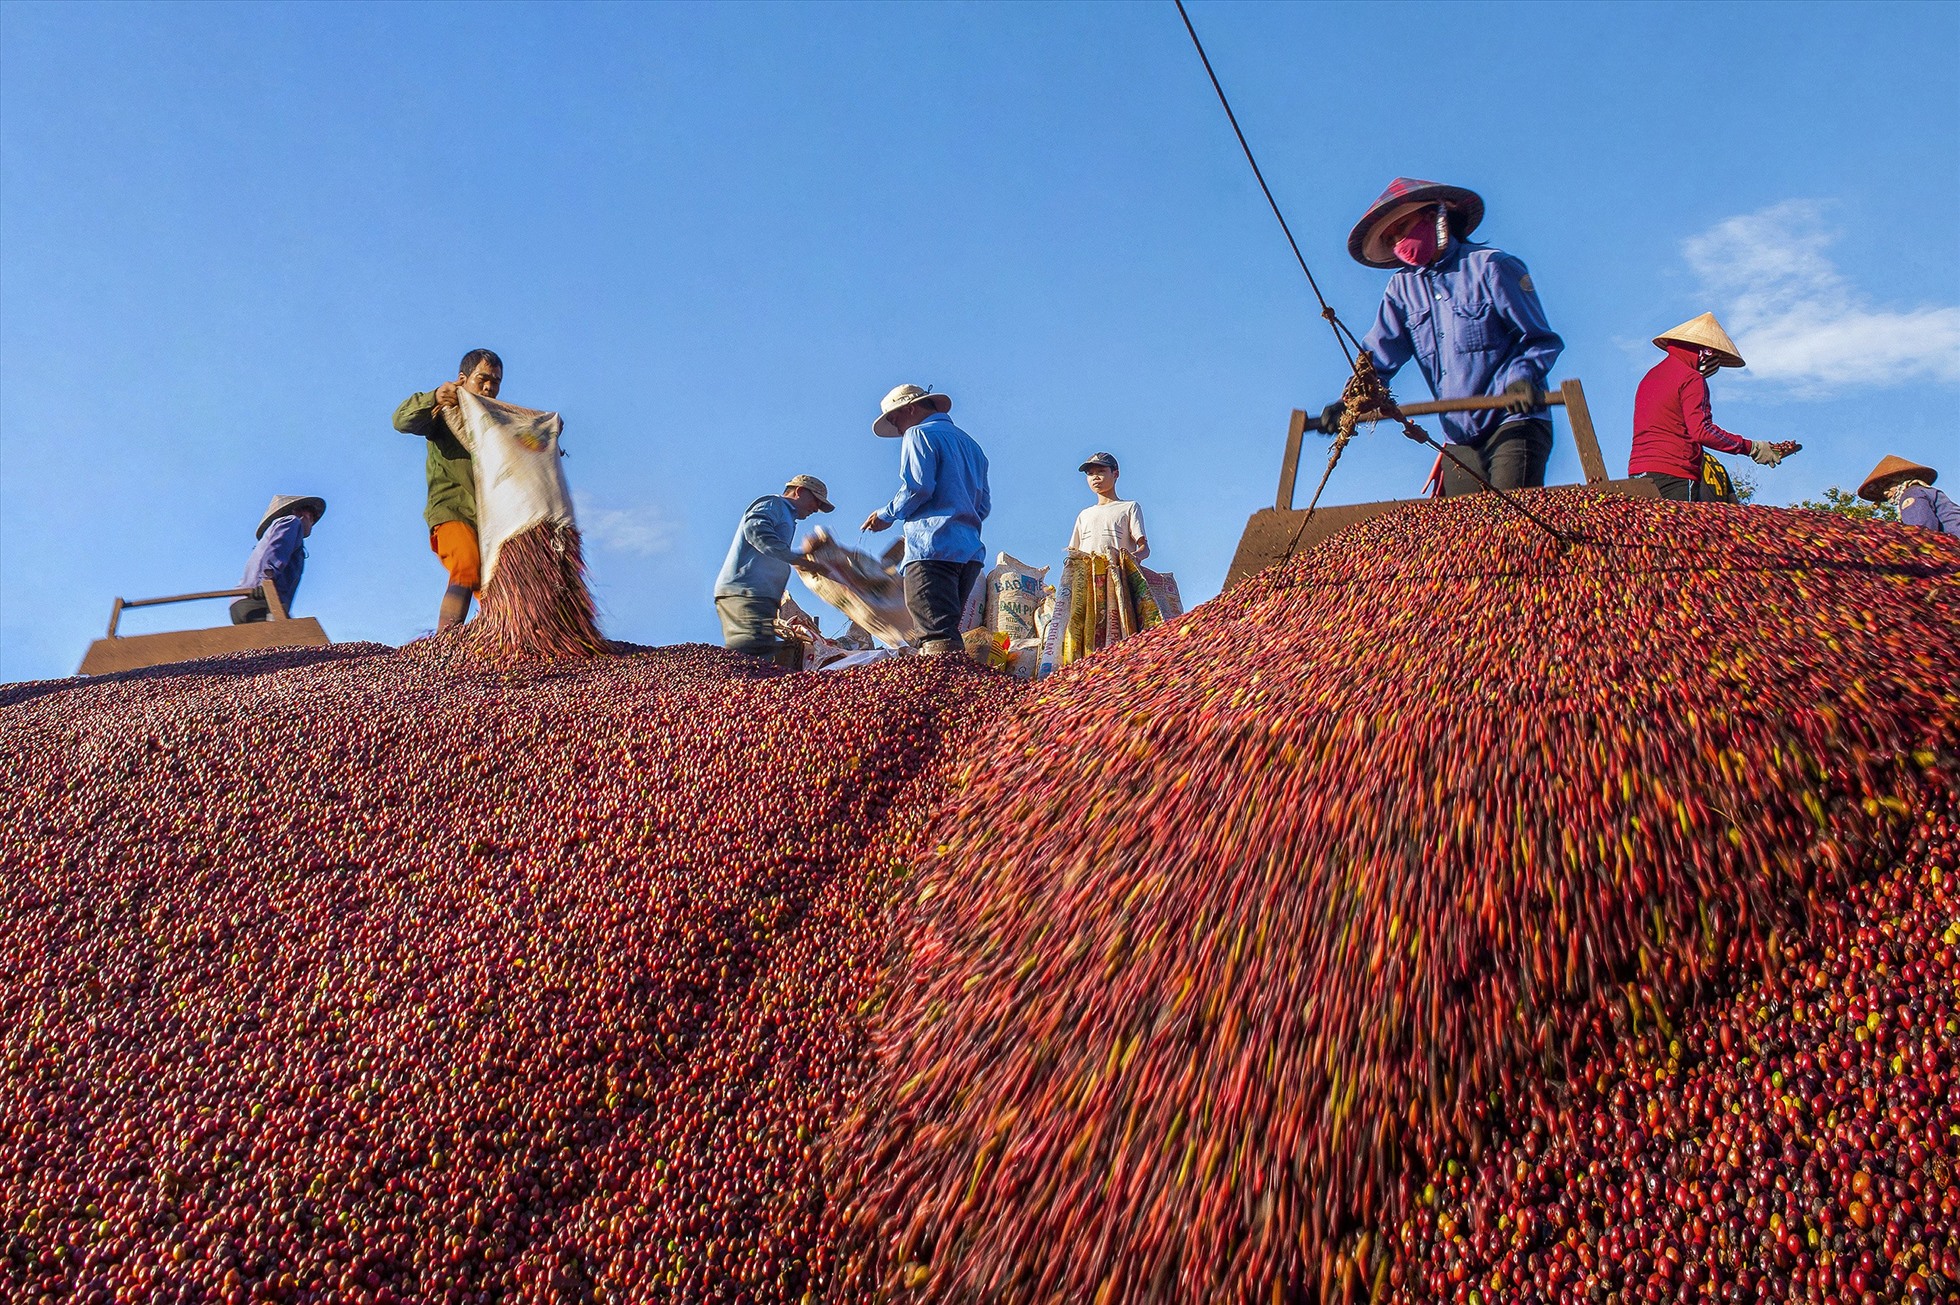 Năm 2022 cà phê là một trong những ngành hằng tăng tỷ trọng xuất khẩu của tỉnh Đắk Lắk. Ảnh: Phan Tuấn